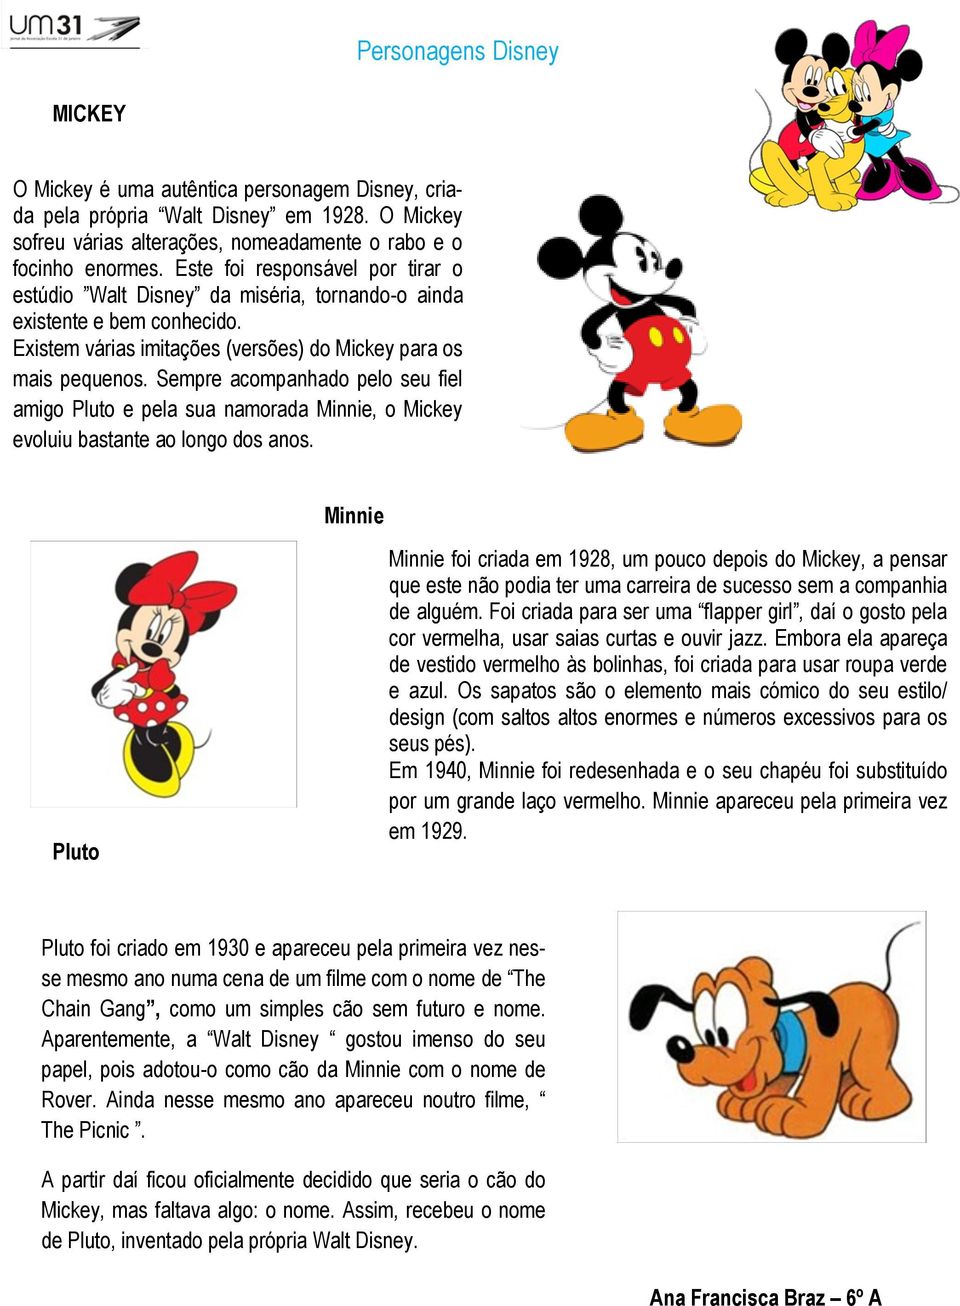 Sempre acompanhado pelo seu fiel amigo Pluto e pela sua namorada Minnie, o Mickey evoluiu bastante ao longo dos anos.